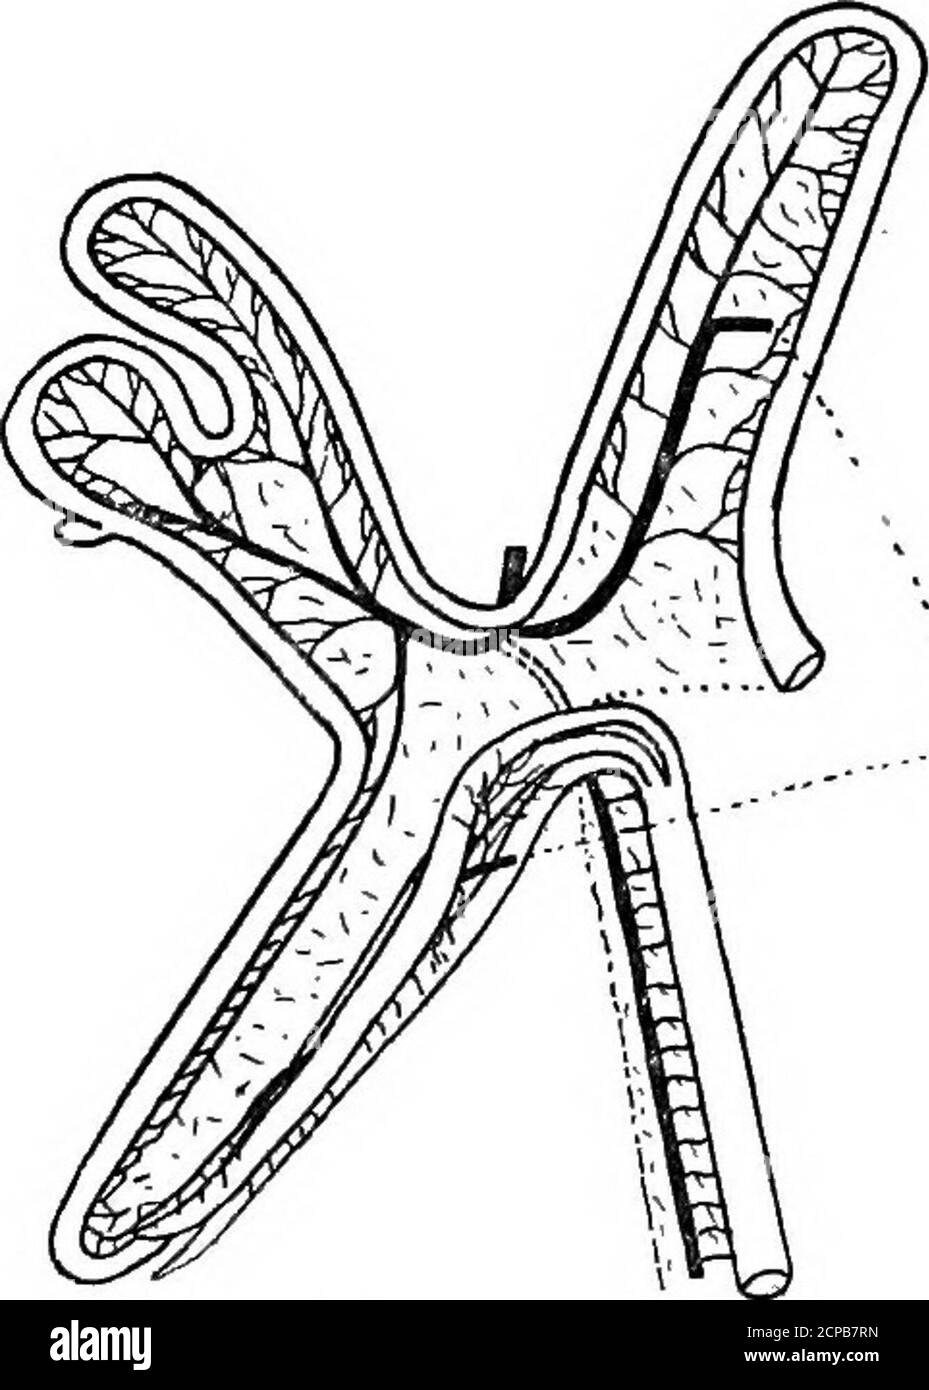 . Die Struktur und Klassifizierung der Vögel . oder kleinere Spina externa. Der Schlüsselbein kommt intoneare Beziehungen mit Procoracoid und Scapula. In der JculP gibt es keine basipterygoiden Prozesse, und die Lakry-mals (in Fulica, Ocydromus und Aramides) nicht verbinden die in Porzama notata die ceeoa sind Minute--8 Zoll in der Länge. Vgl. Parridceamong Limicolse. C. G. Giebel, Osteologie der gemeinsamen Ealle, &o., Zeitschrift ges. Naturw.V. (1855), S. 185. Shufeldt, Osteologie bestimmter Kraniche, Bails, und theirAllies, J, Anat. Phys. 1895, S. 2; und Osteologie von Poraana Carolina, Journ. Komp. Mittel Surg. 1888. Stockfoto